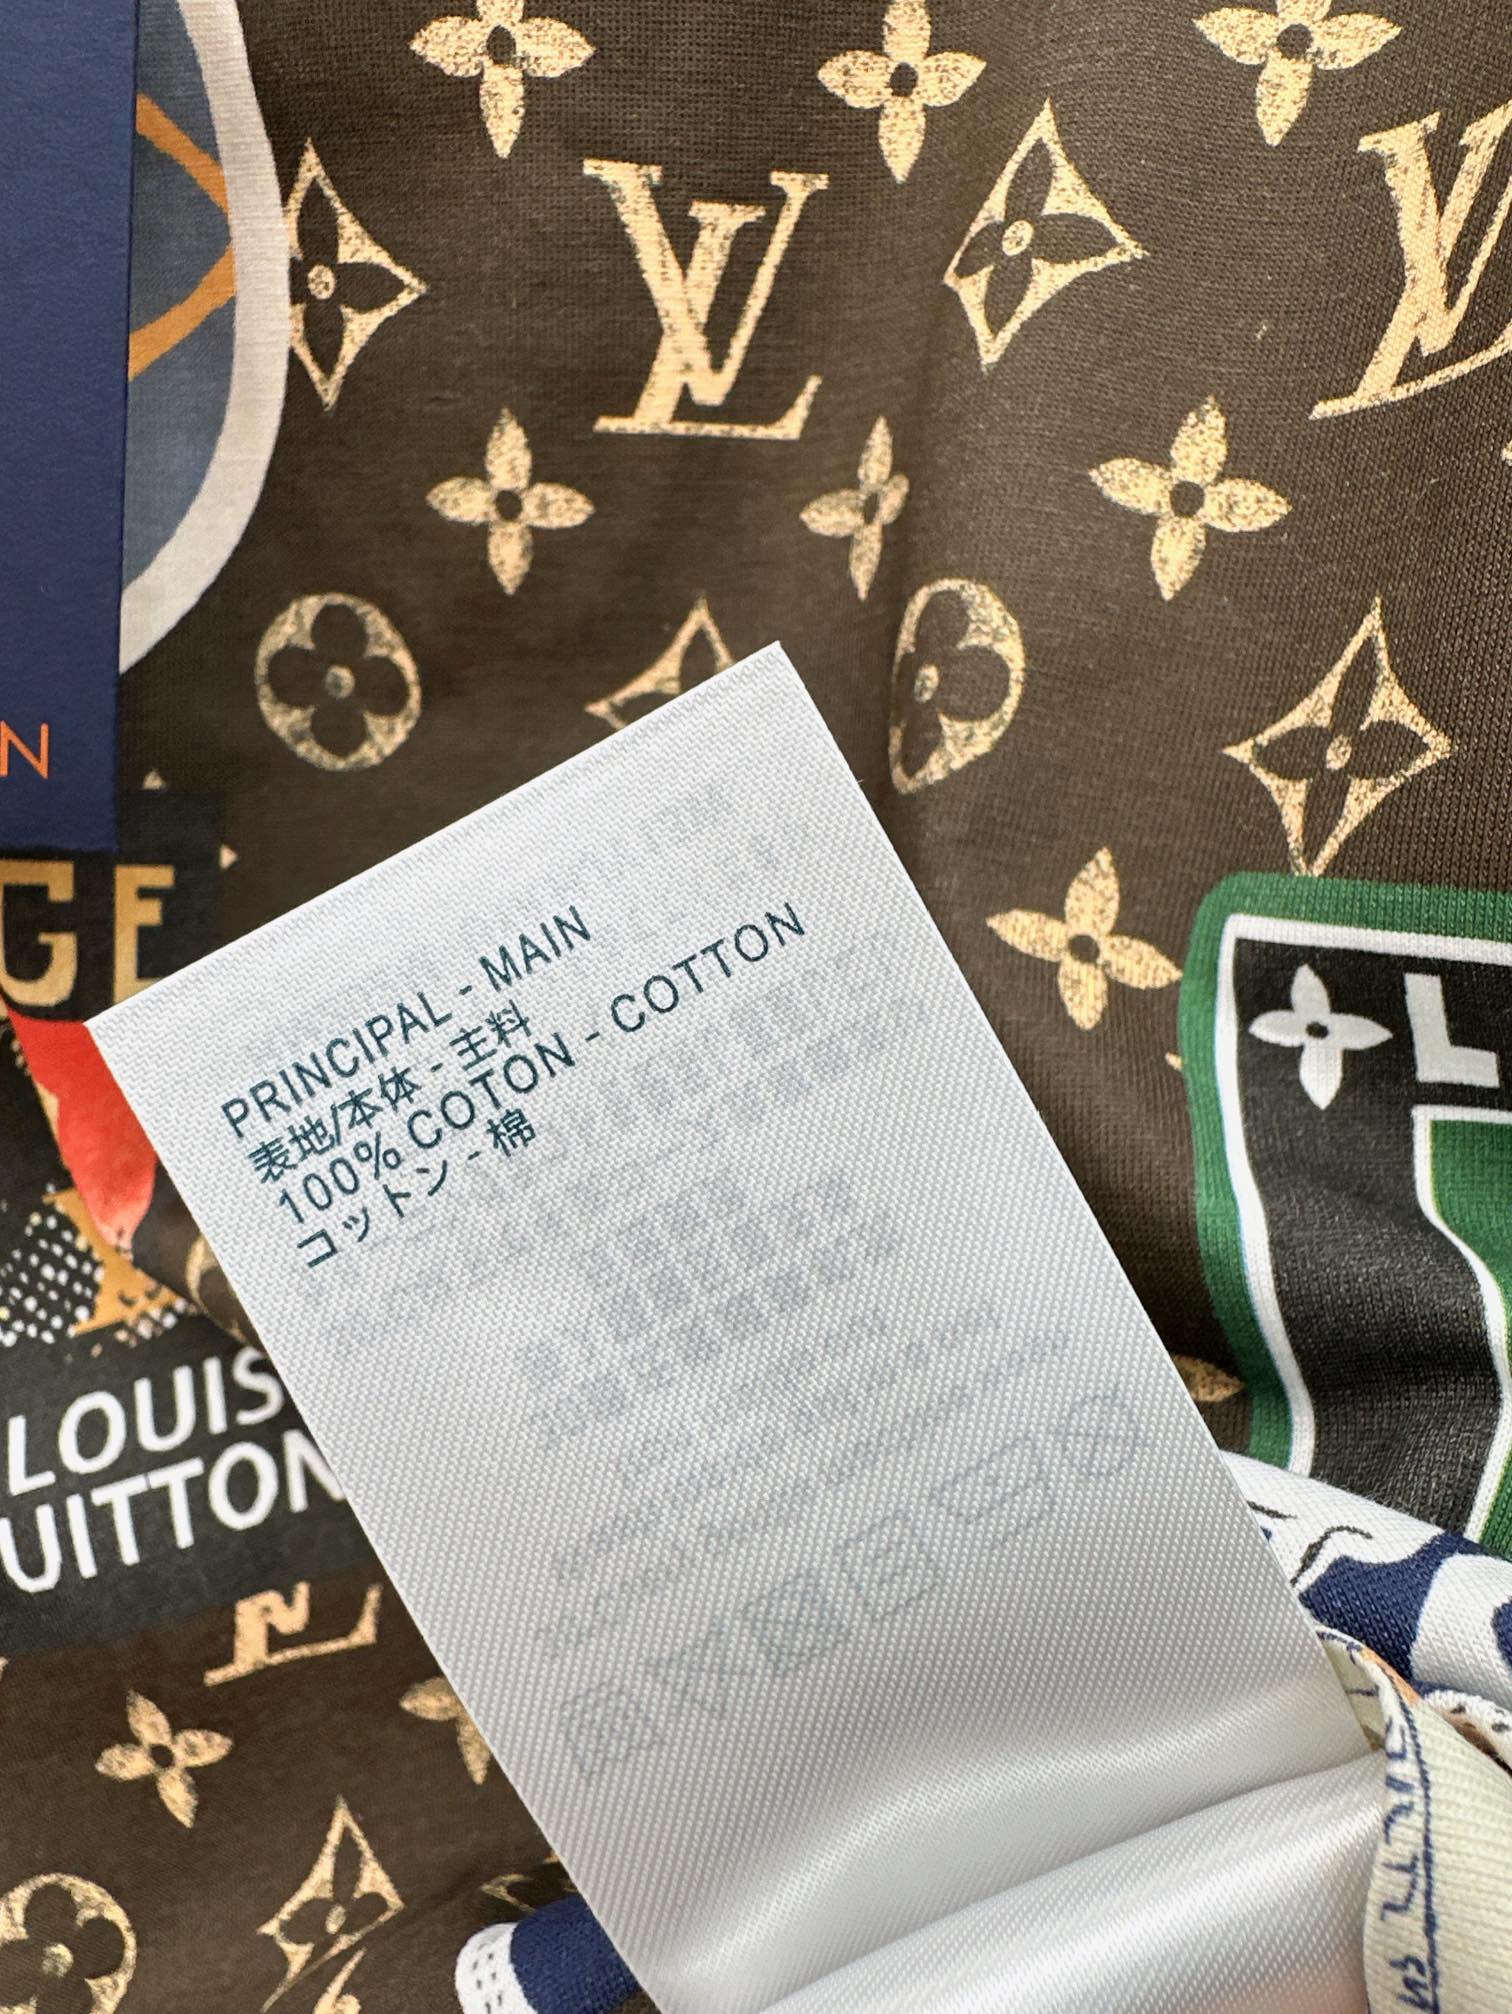 L家24Ss春夏最新款FlightMode印花短袖T恤两个版本一个超短款一个基础款本季的标志性图案爱丽舍